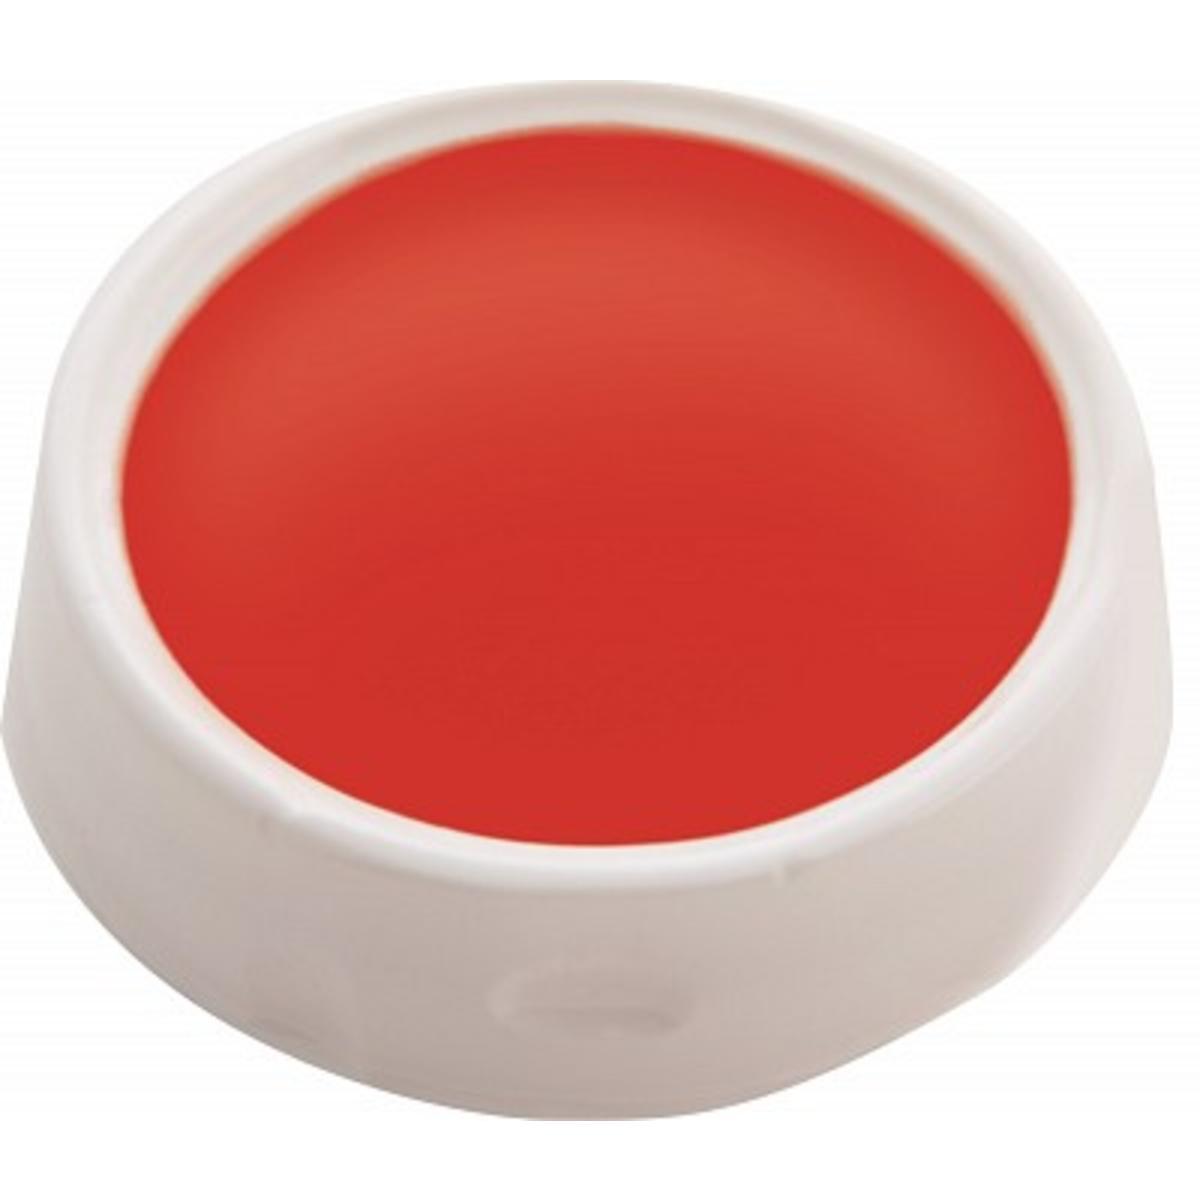 Palette ronde en fard gras - 6,5 x 6,5 cm - Rouge